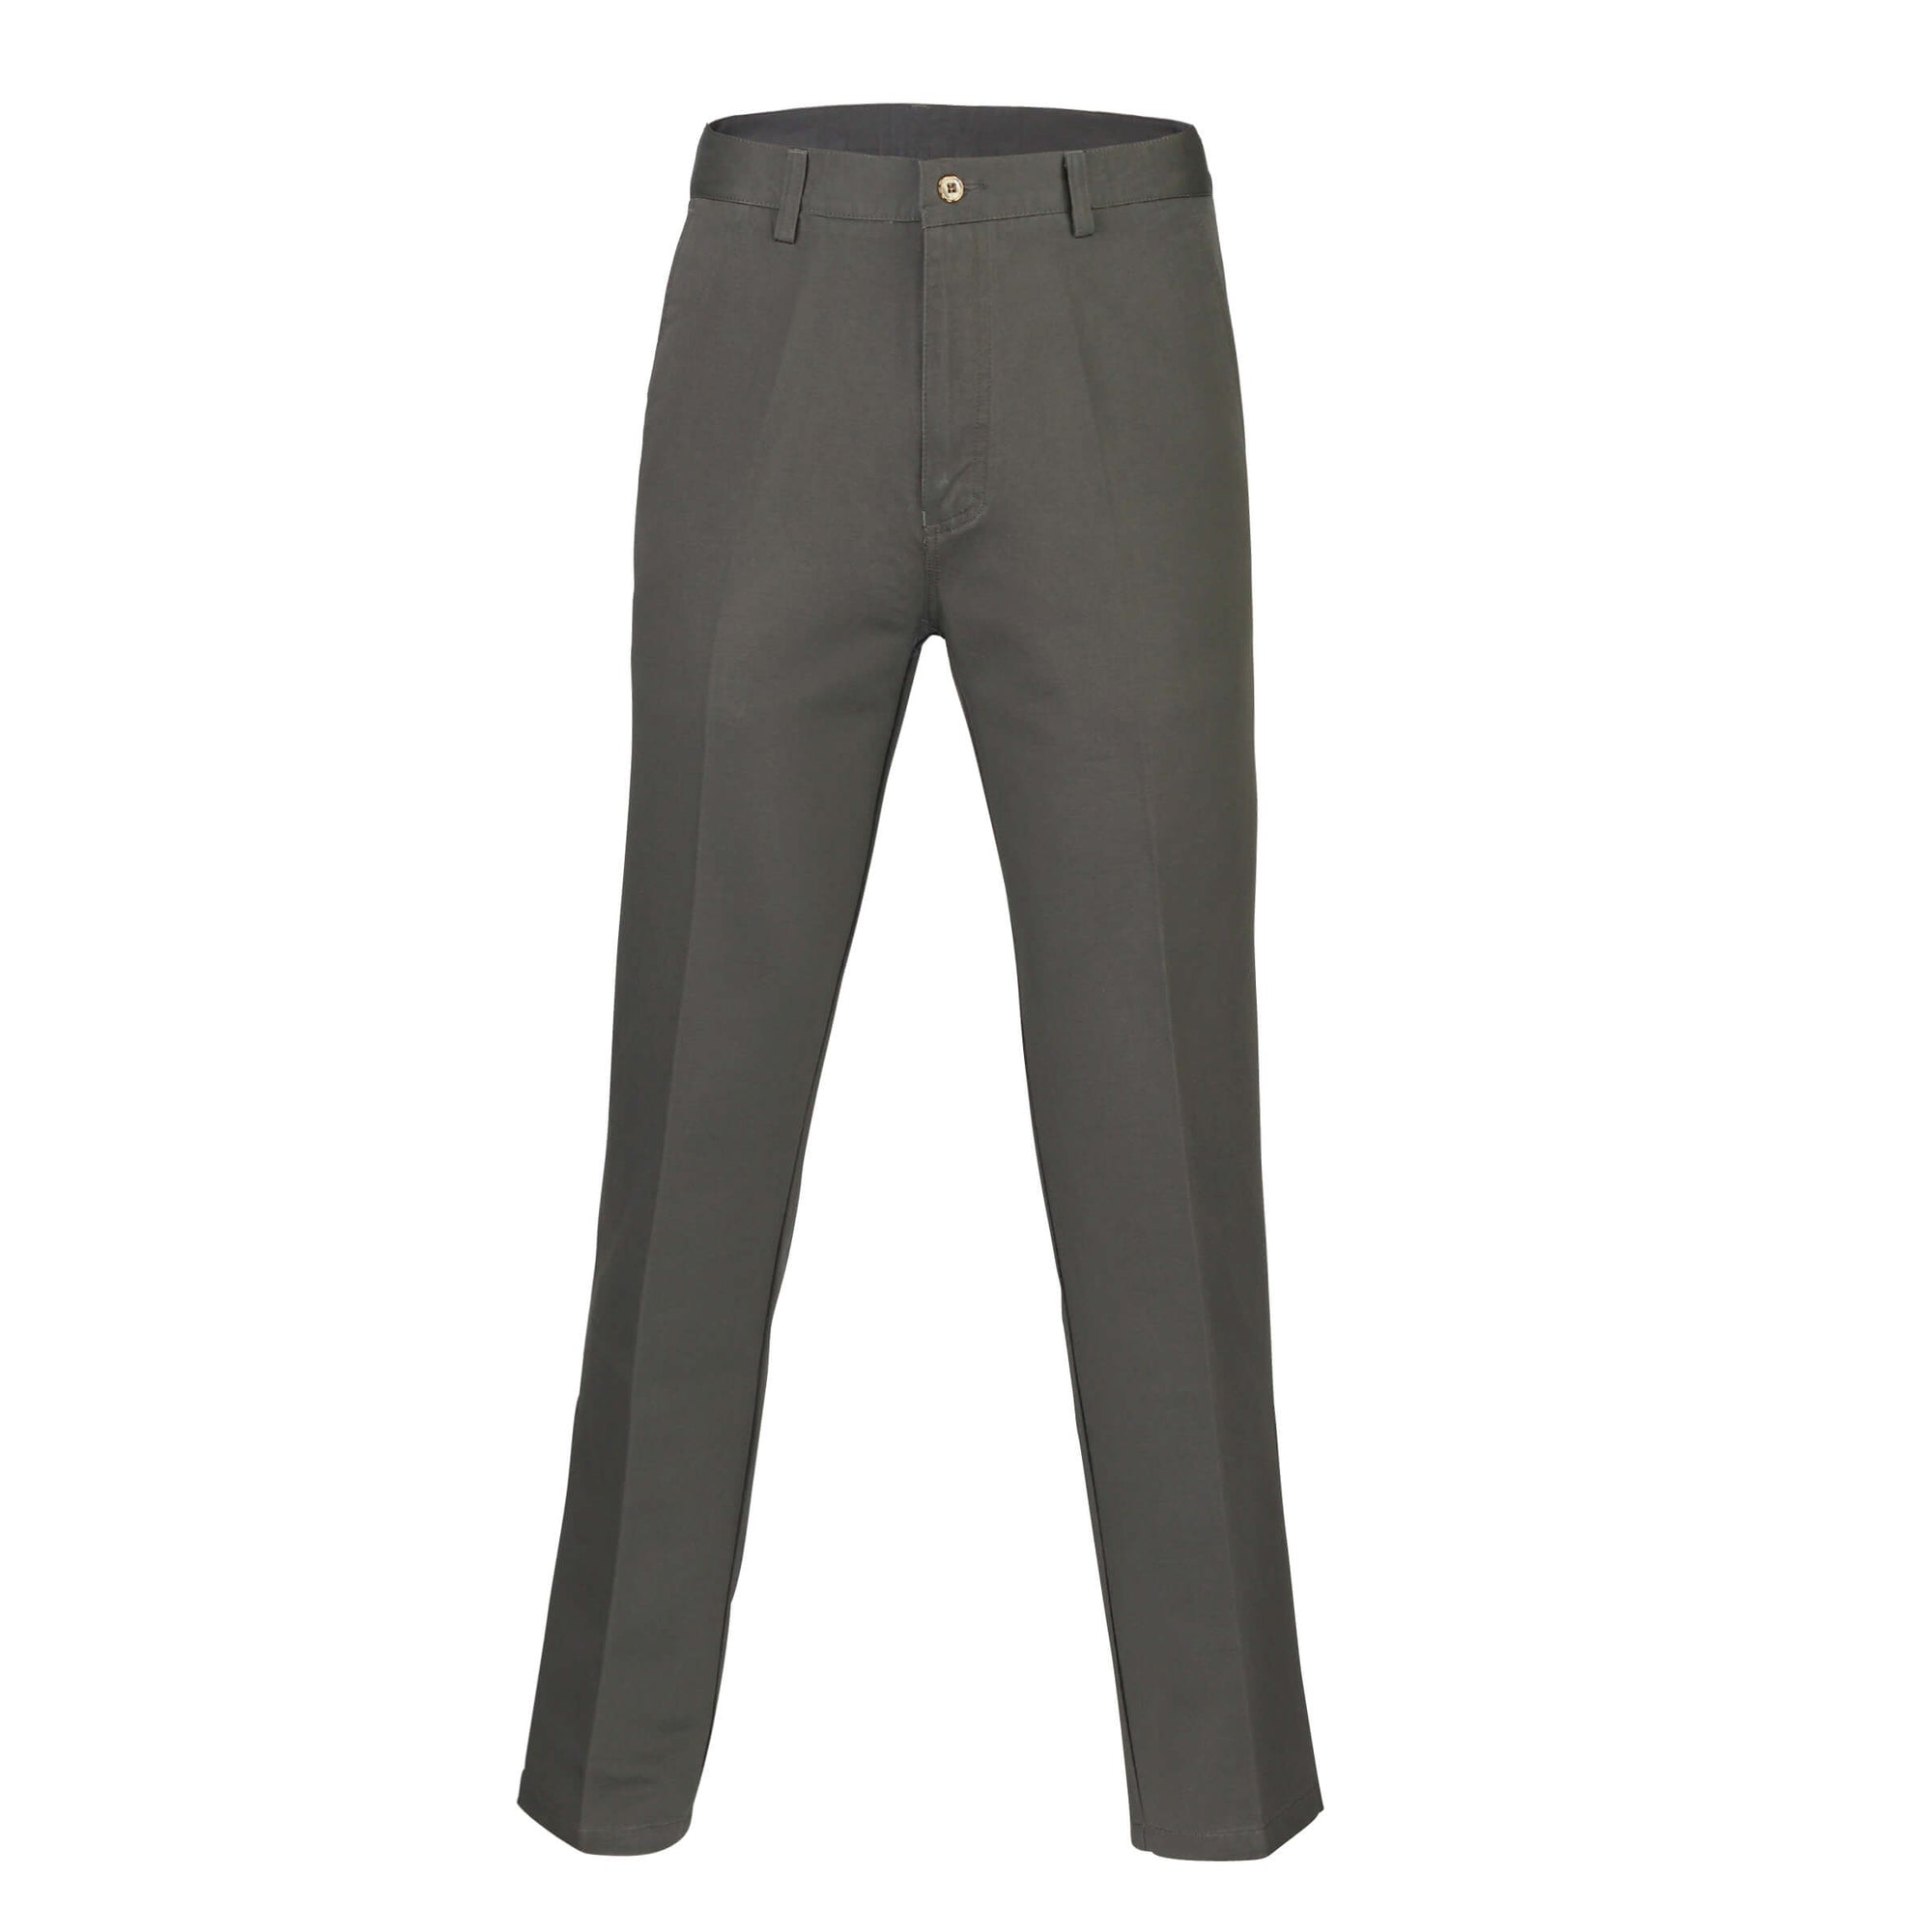 Mens Slim Suit Trousers New Fashion Khaki Casual Pants Mens Office Formal Pants  Black Suit Pants Men Suit Pants  Suit Pants  AliExpress